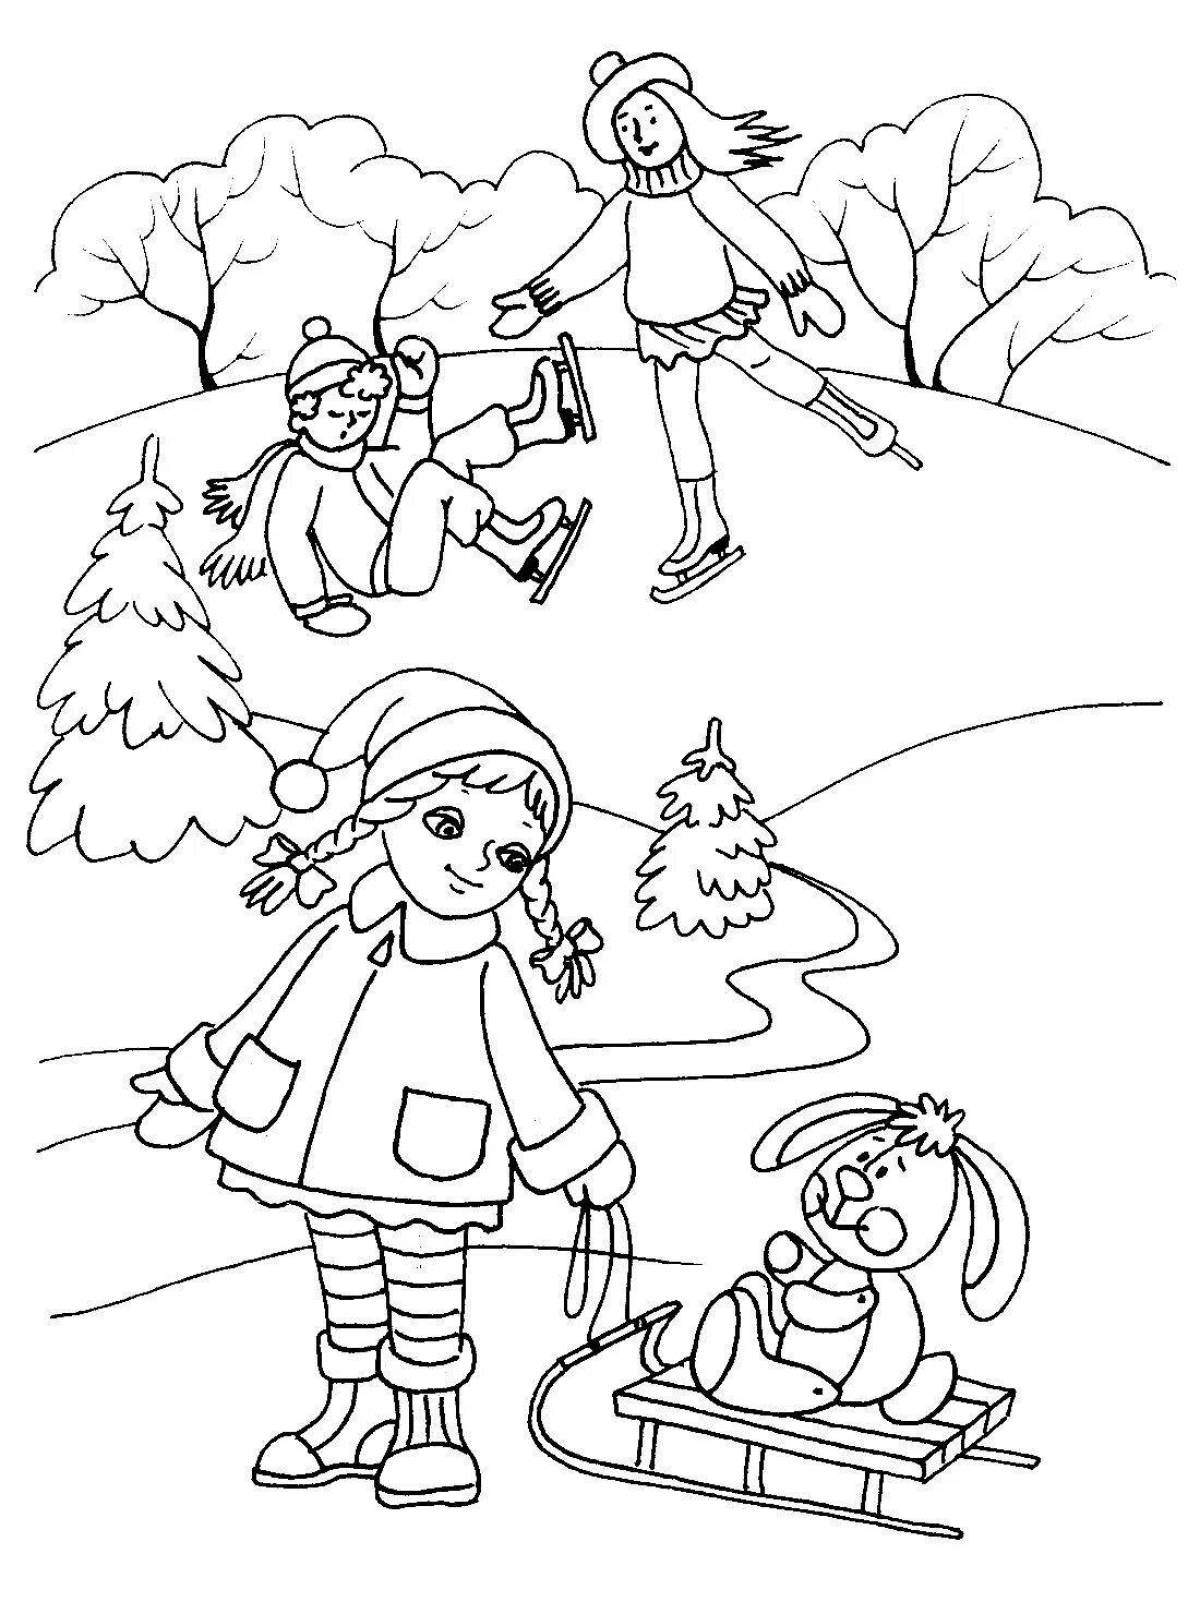 Great children's walks in winter